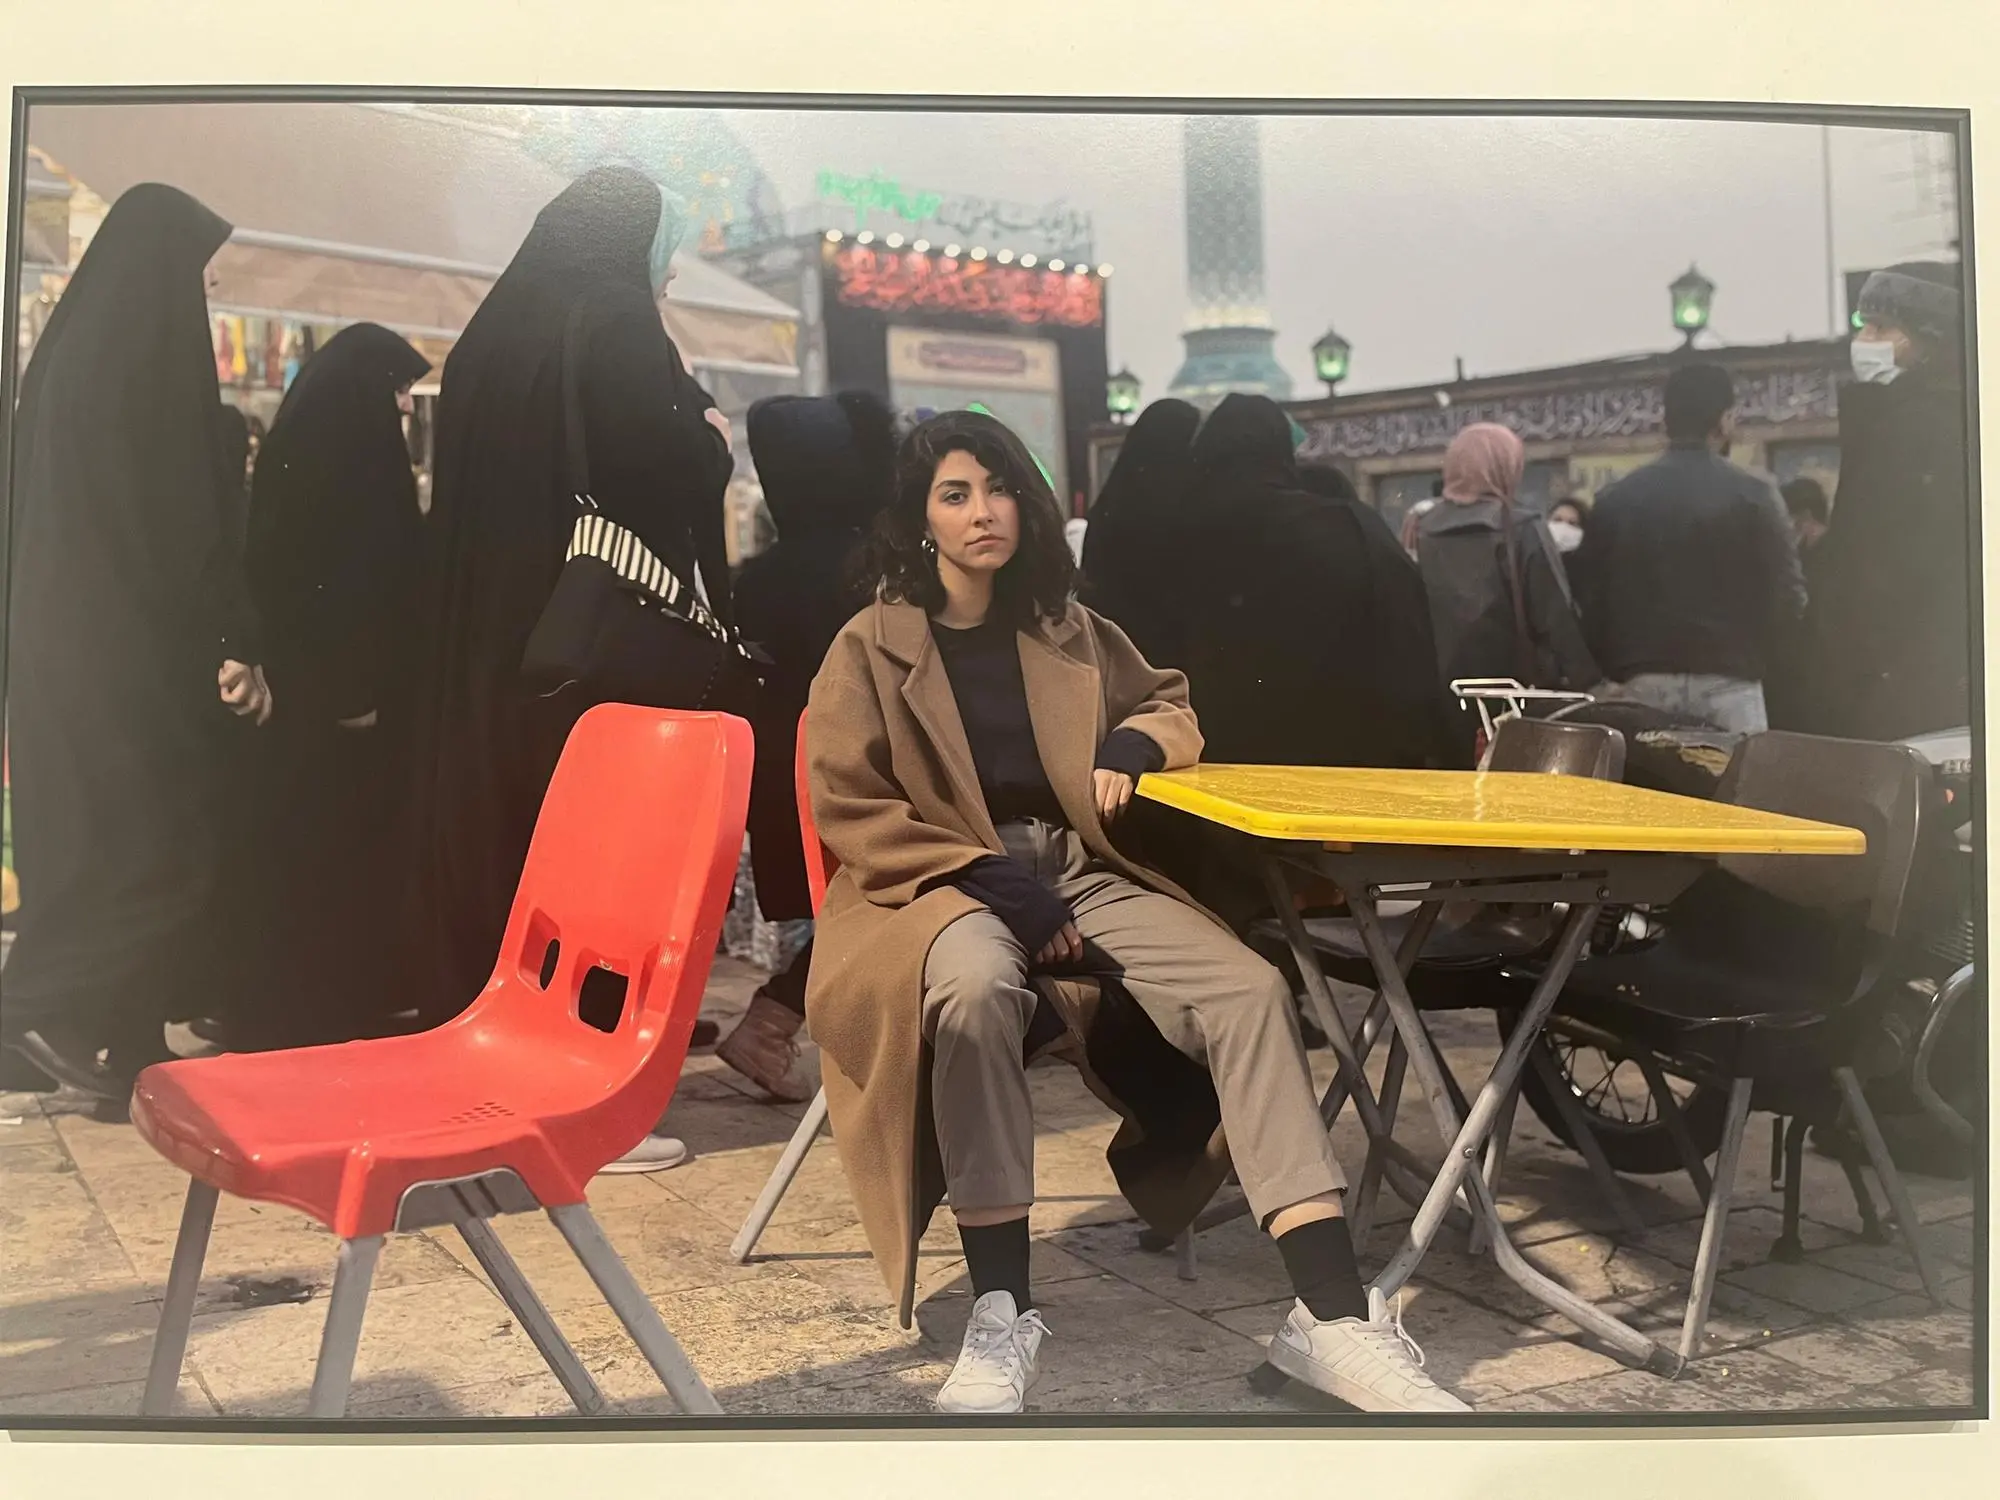 riproduzione della foto sulla rivolta delle donne in Iran (foto V. Pinna)